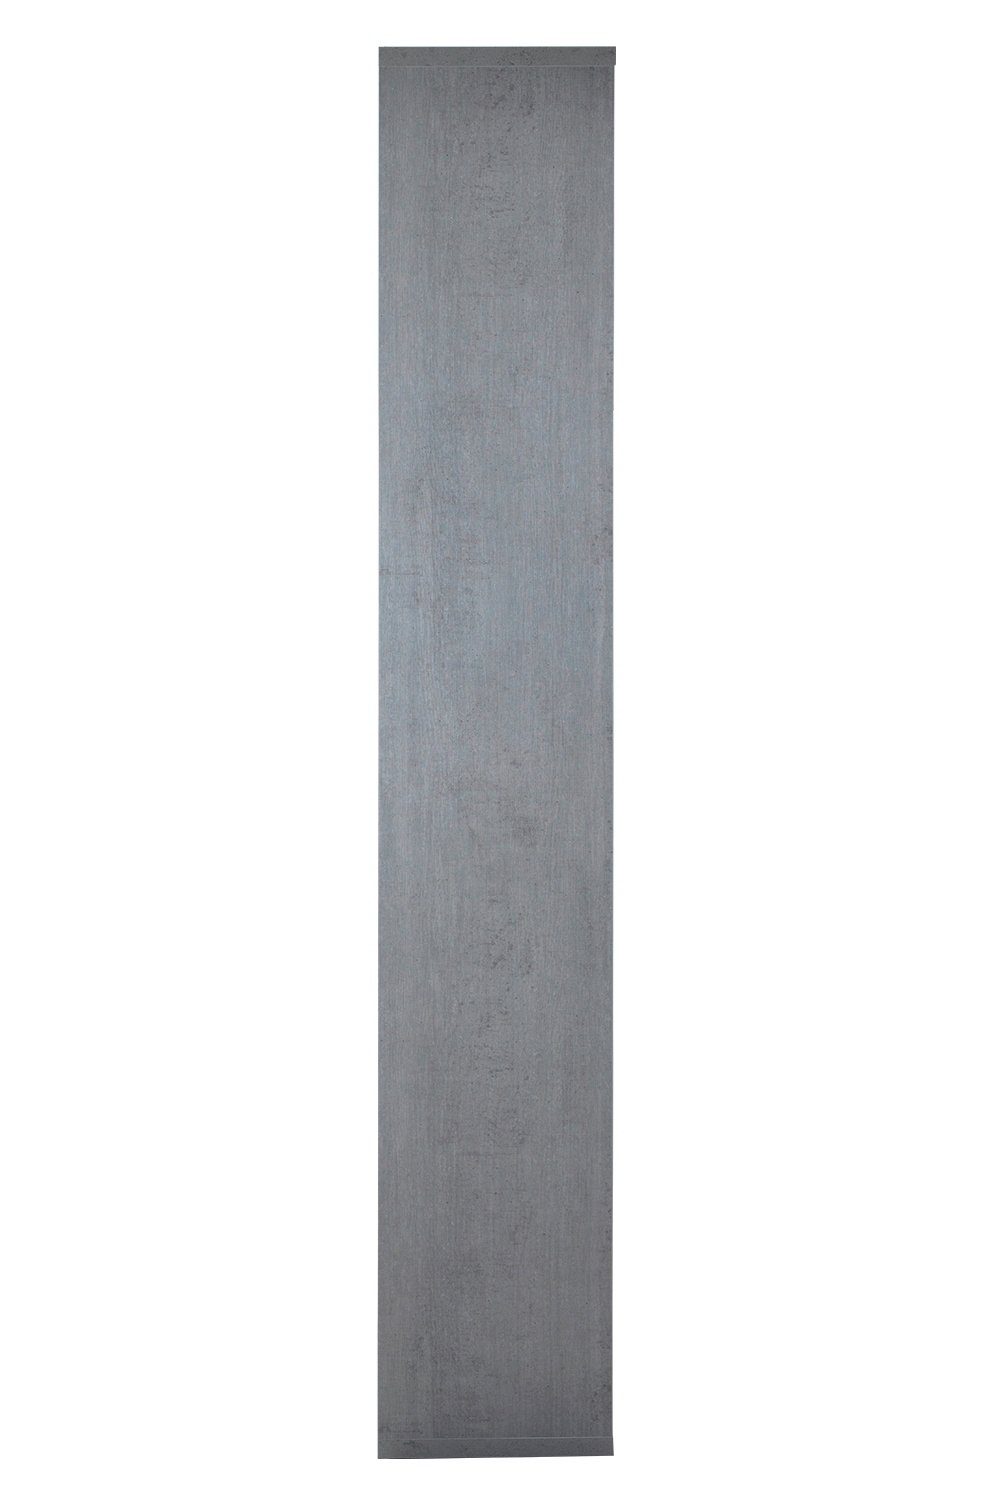 DISEGNO, H Betondekor, 217 Regal Composad Fächern x B 44 mit cm, 6